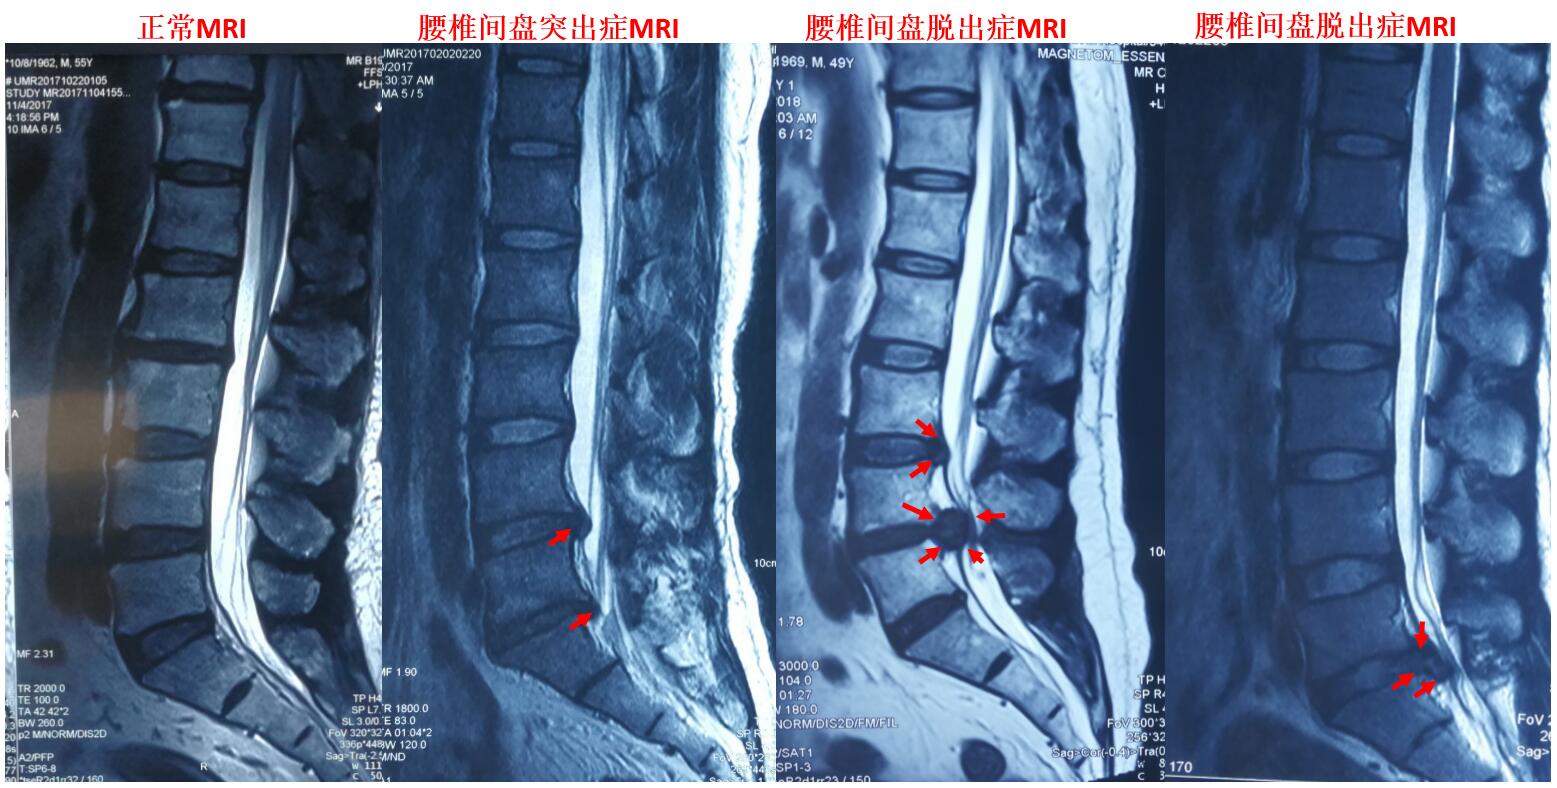 核磁共振检查(mri)是诊断腰椎间盘突出症最为合适的无辐射,无创伤